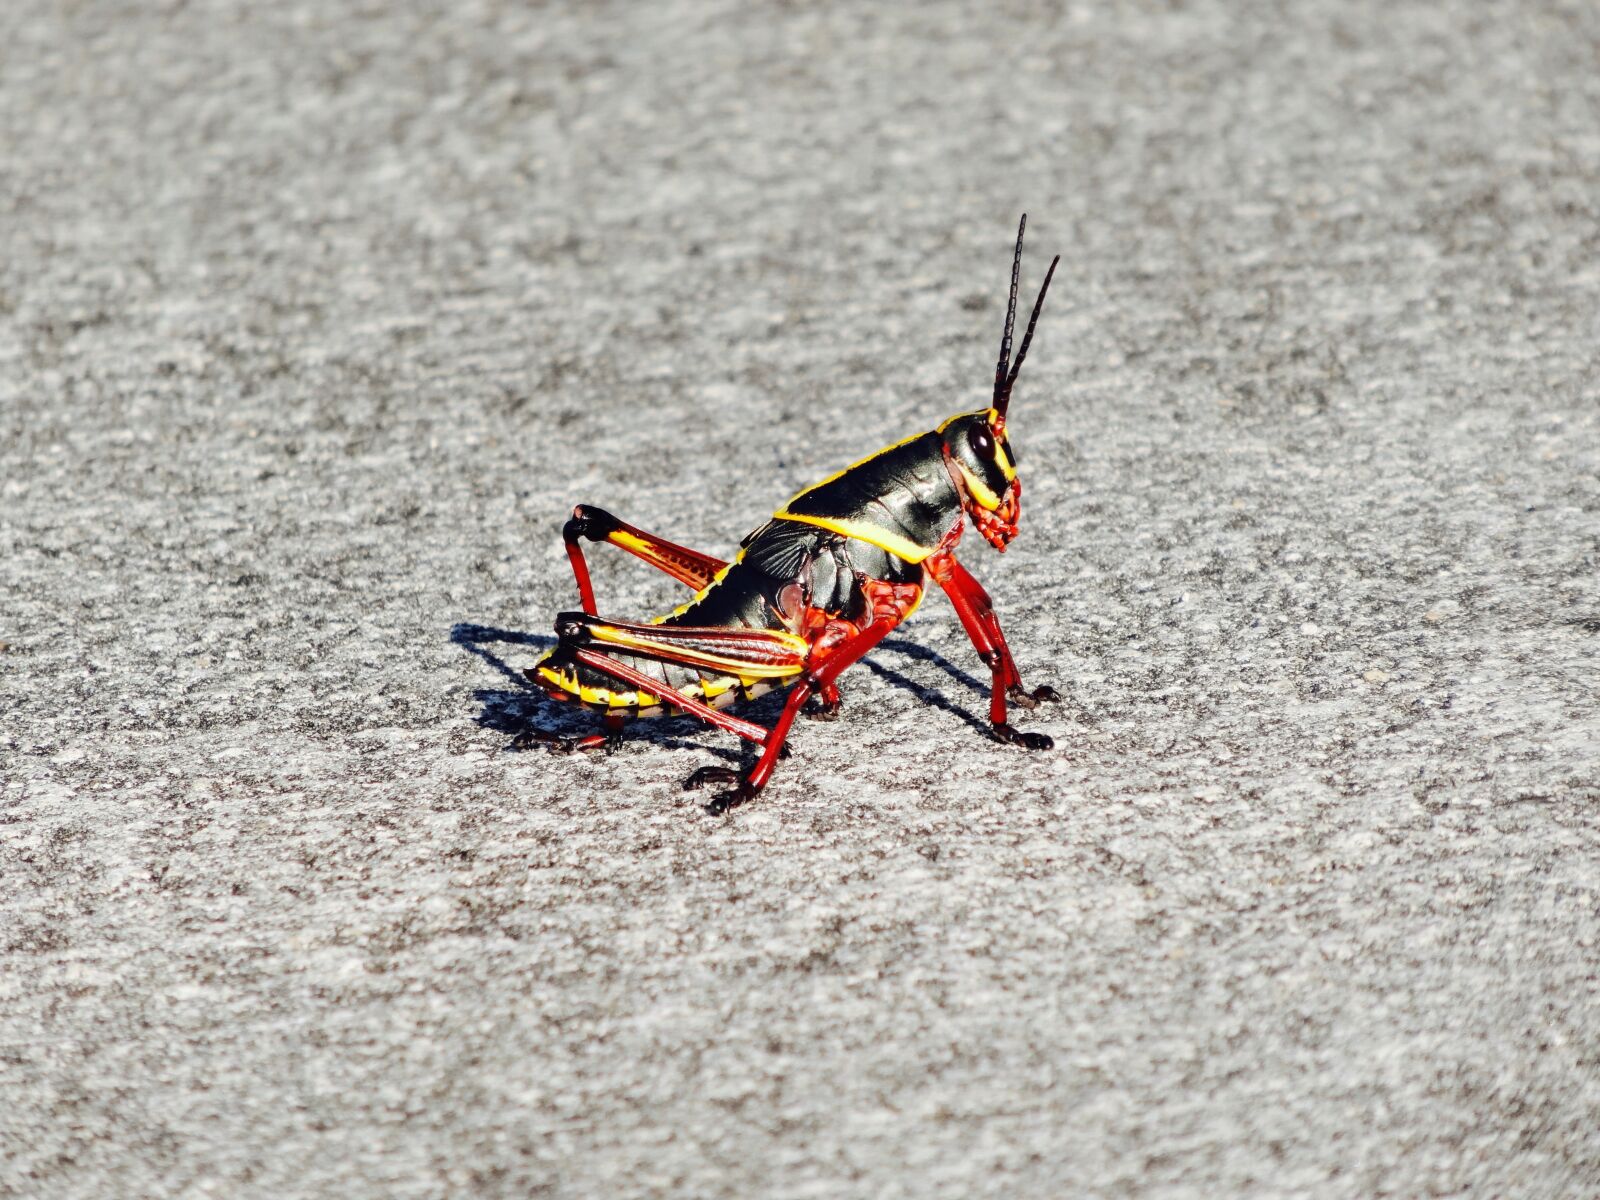 Sony Cyber-shot DSC-HX20V sample photo. Cricket, insect, grasshopper photography